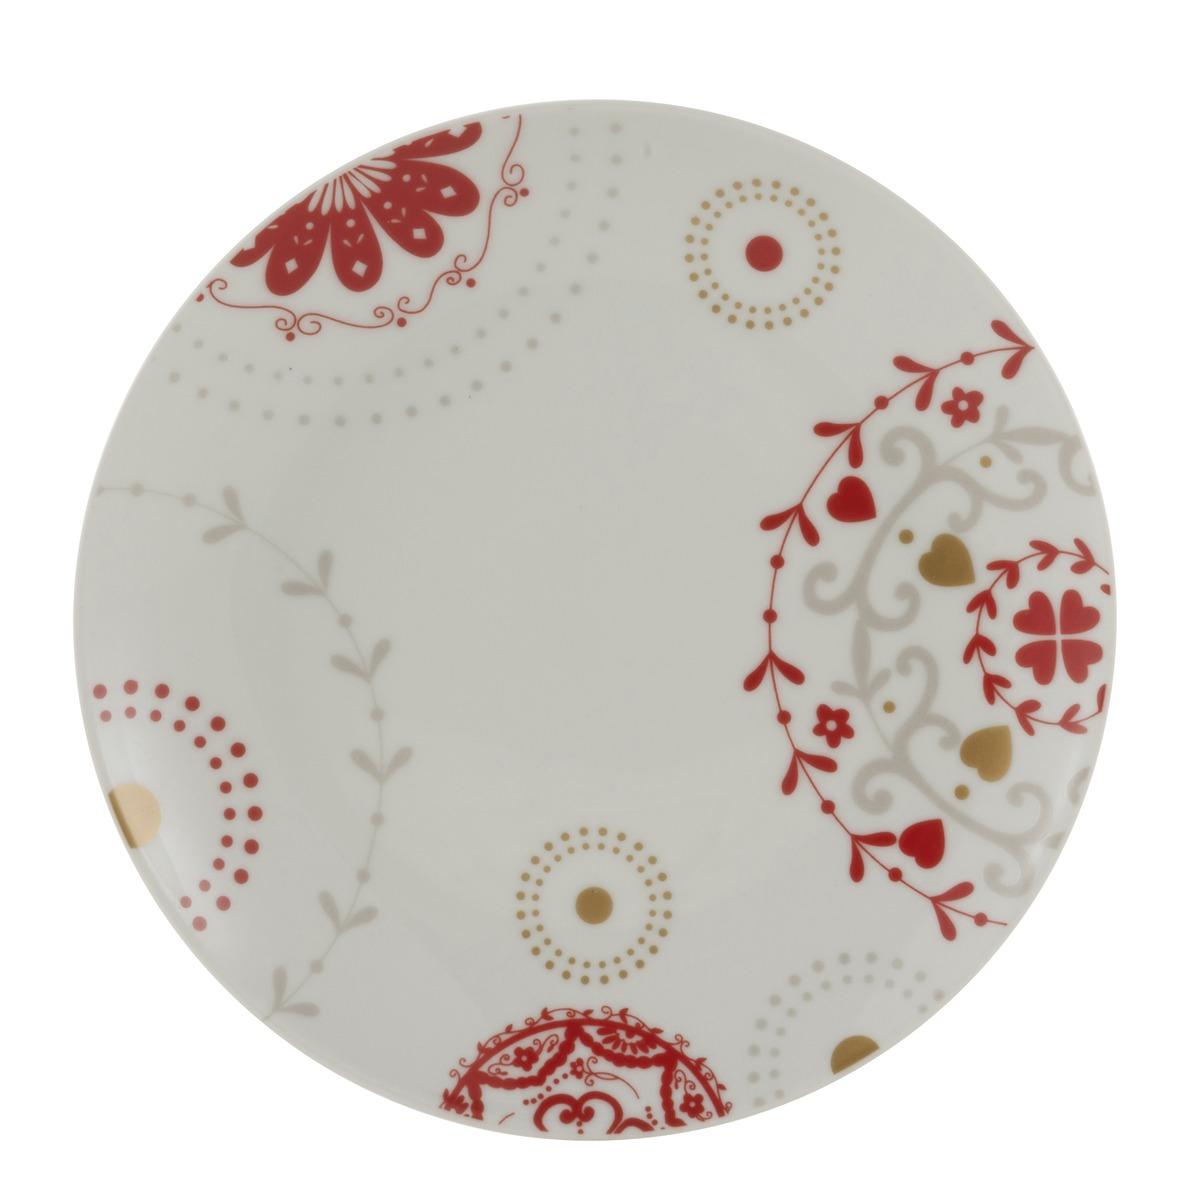 Assiette à dessert motif floral - Diamètre 19 cm - Blanc, Rouge